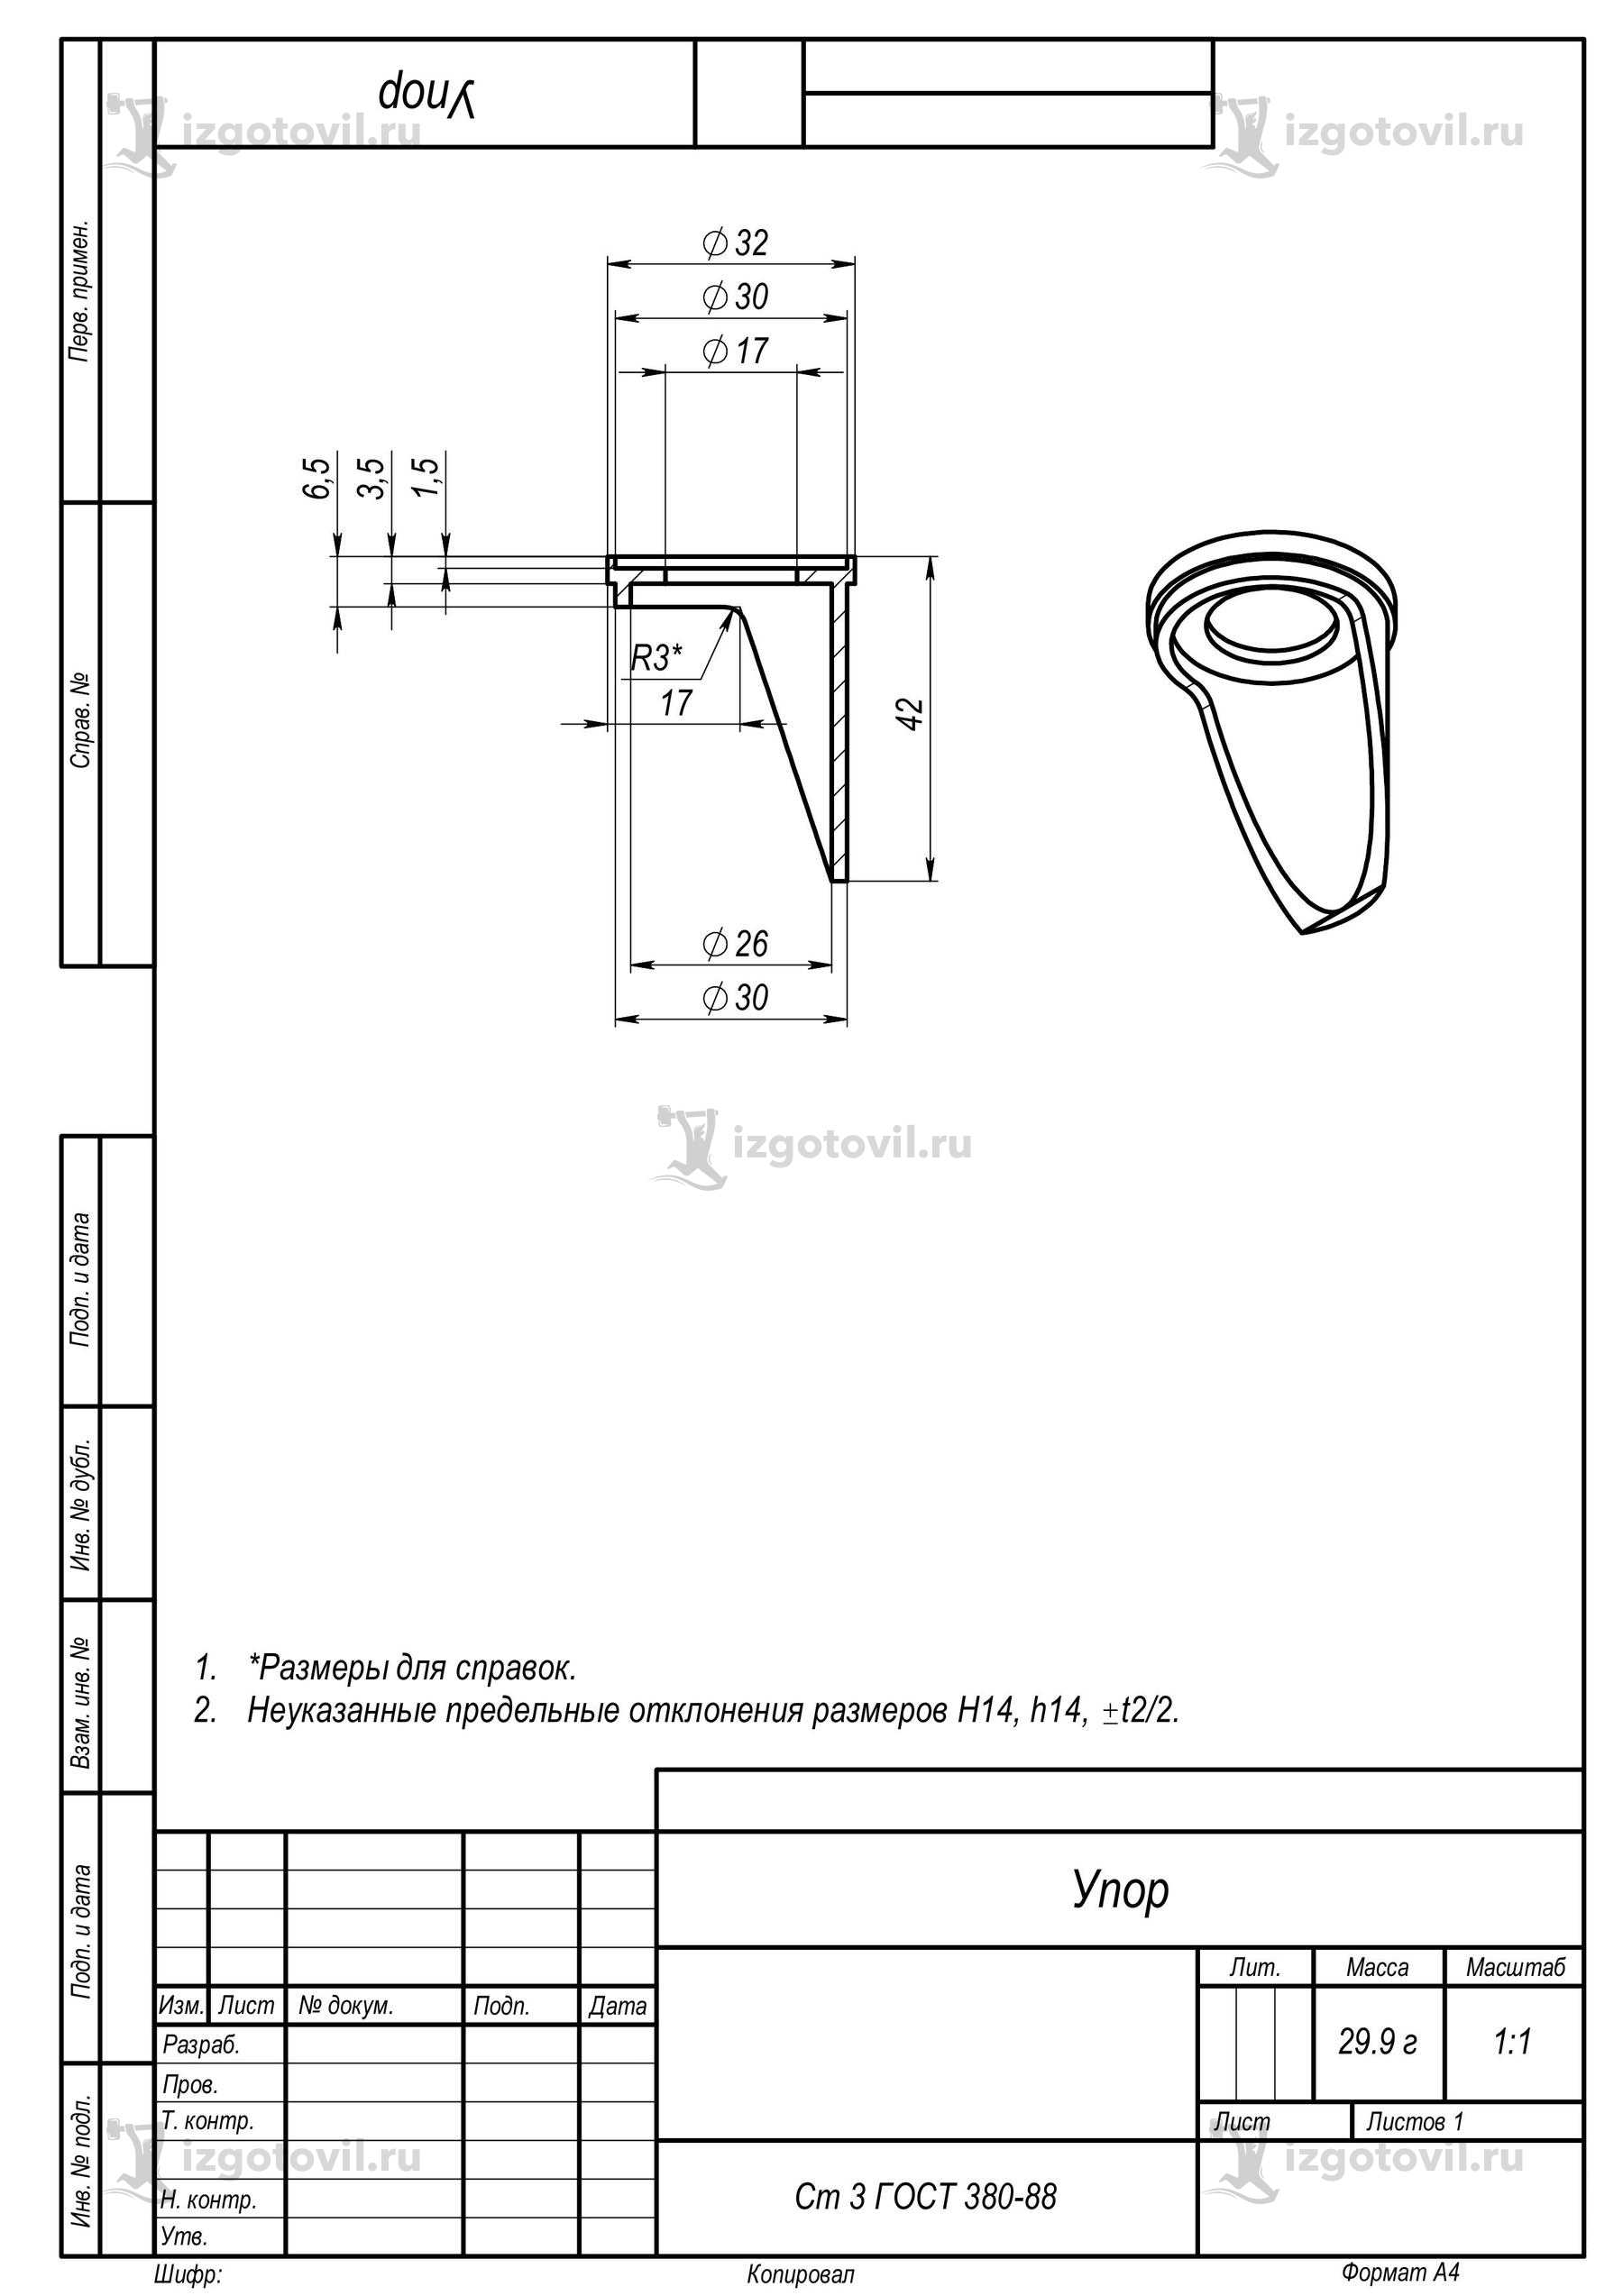 Токарно-фрезерная обработка: изготовление упора, цилиндра и толкателя